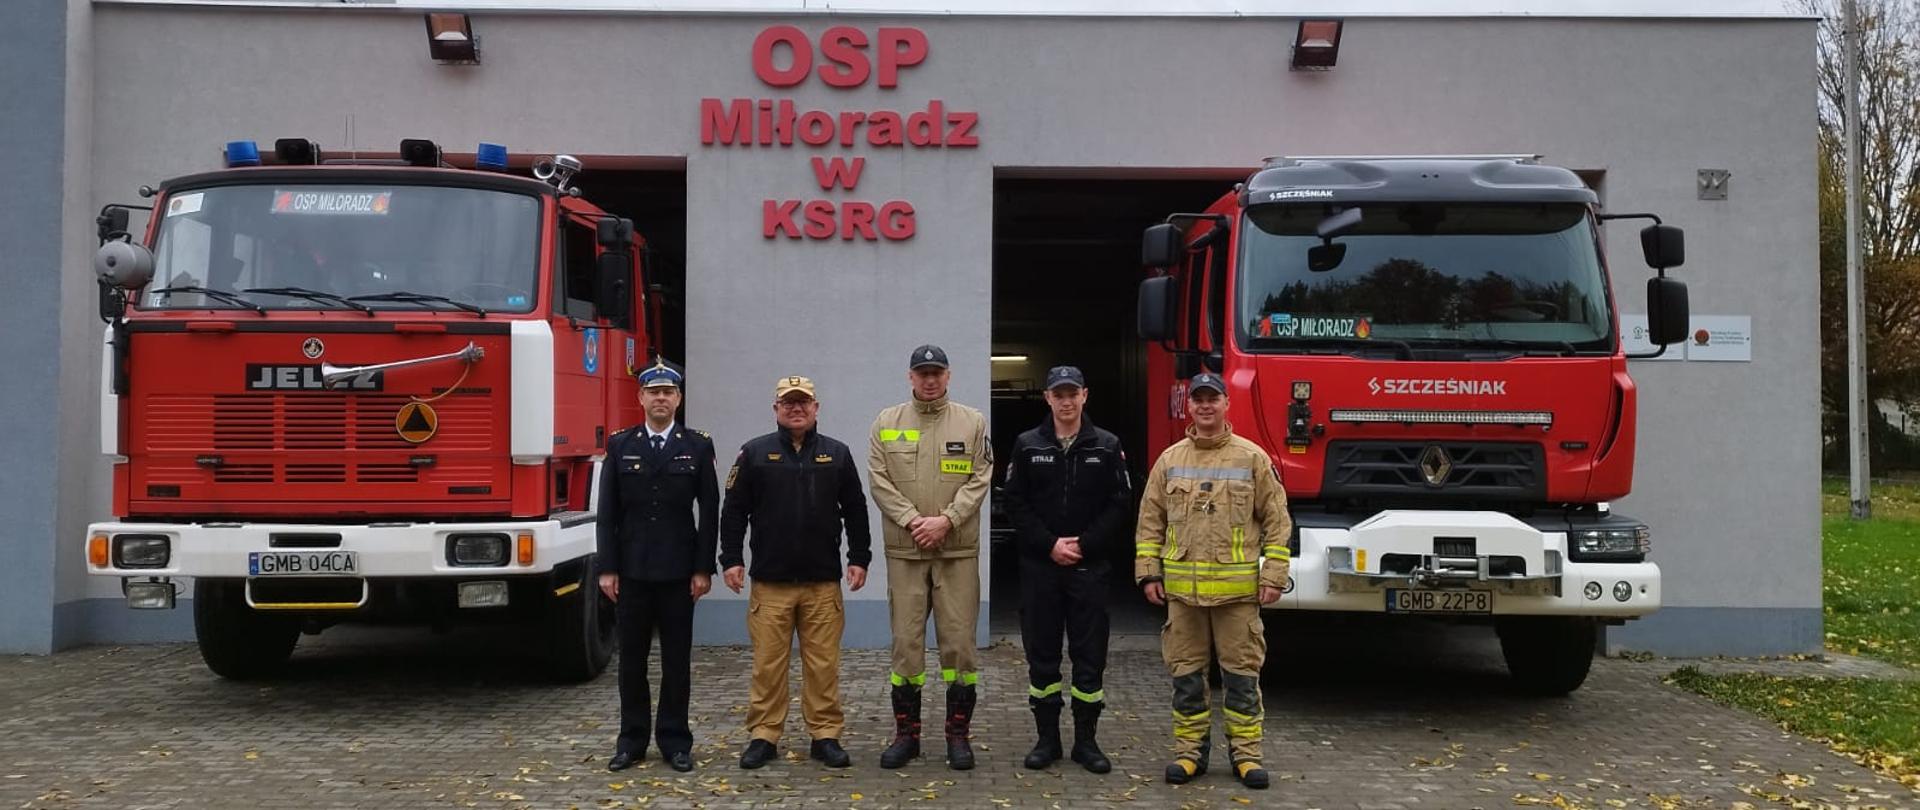 Strażacy Państwowej Straży Pożarnej oraz druhowie Ochotniczej Straży Pożarnej Miłoradz stoją przed remizą obok stoją samochody gaśnicze.